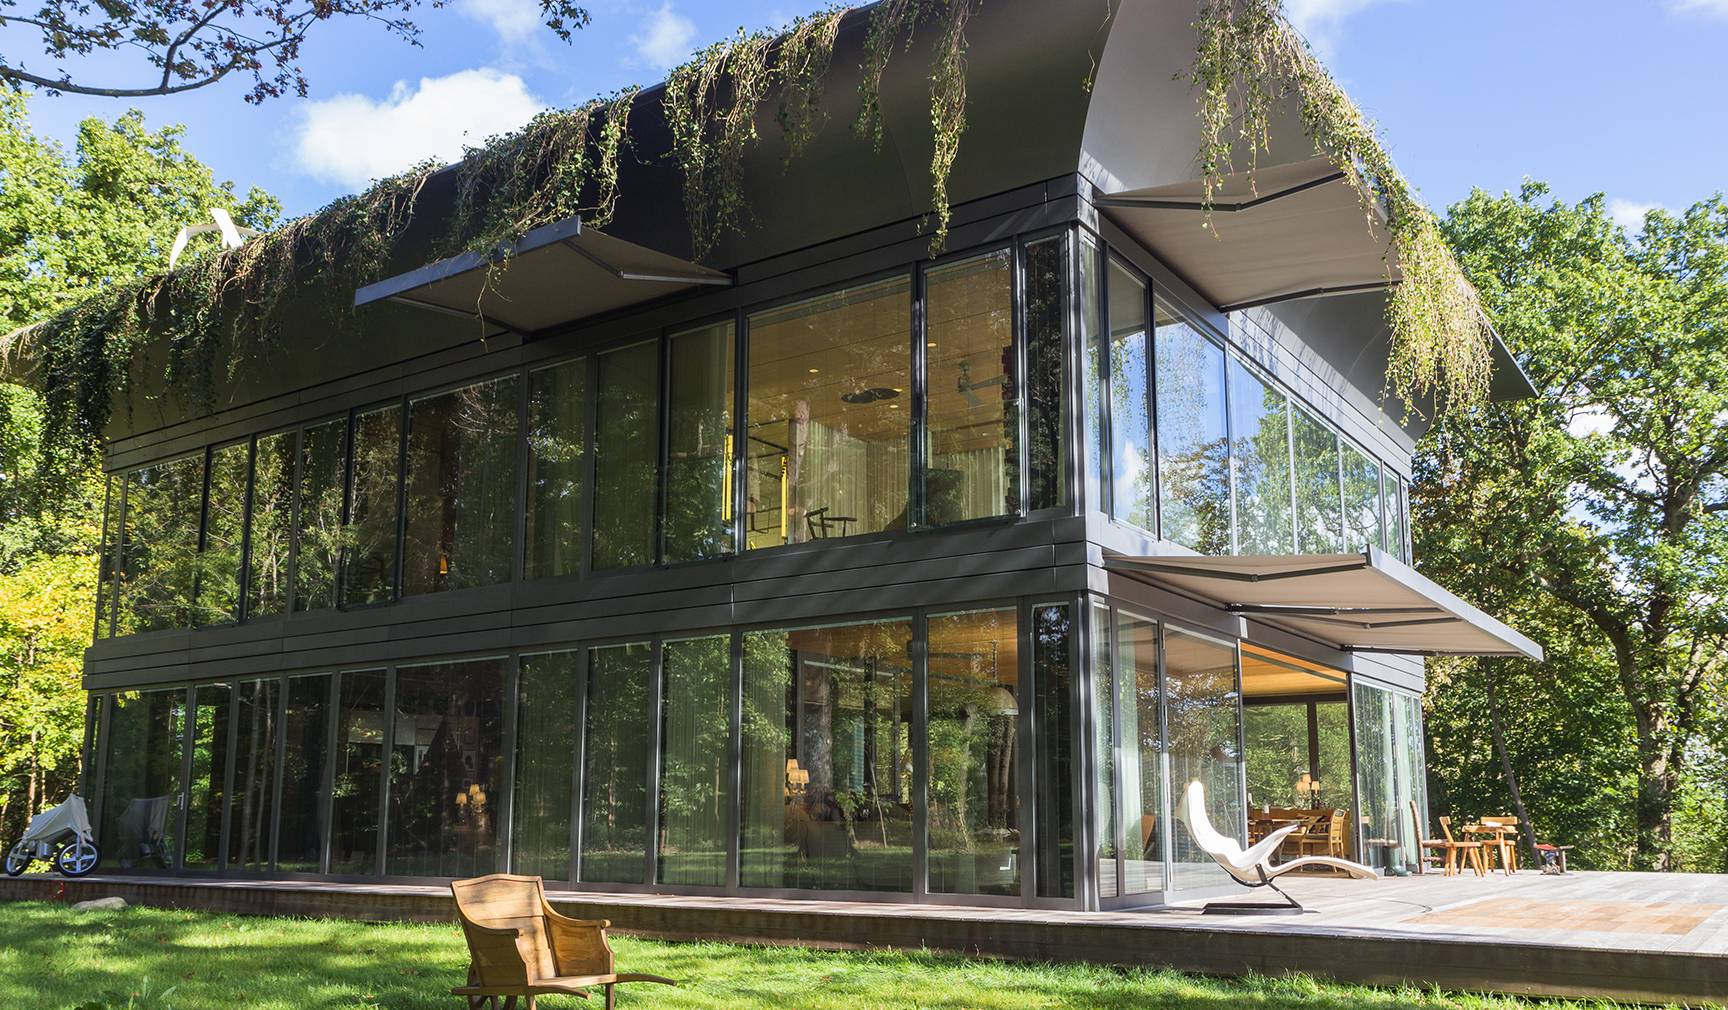 Extérieur de la maison témoin du projet PATH, réalisée par Philippe Starck.